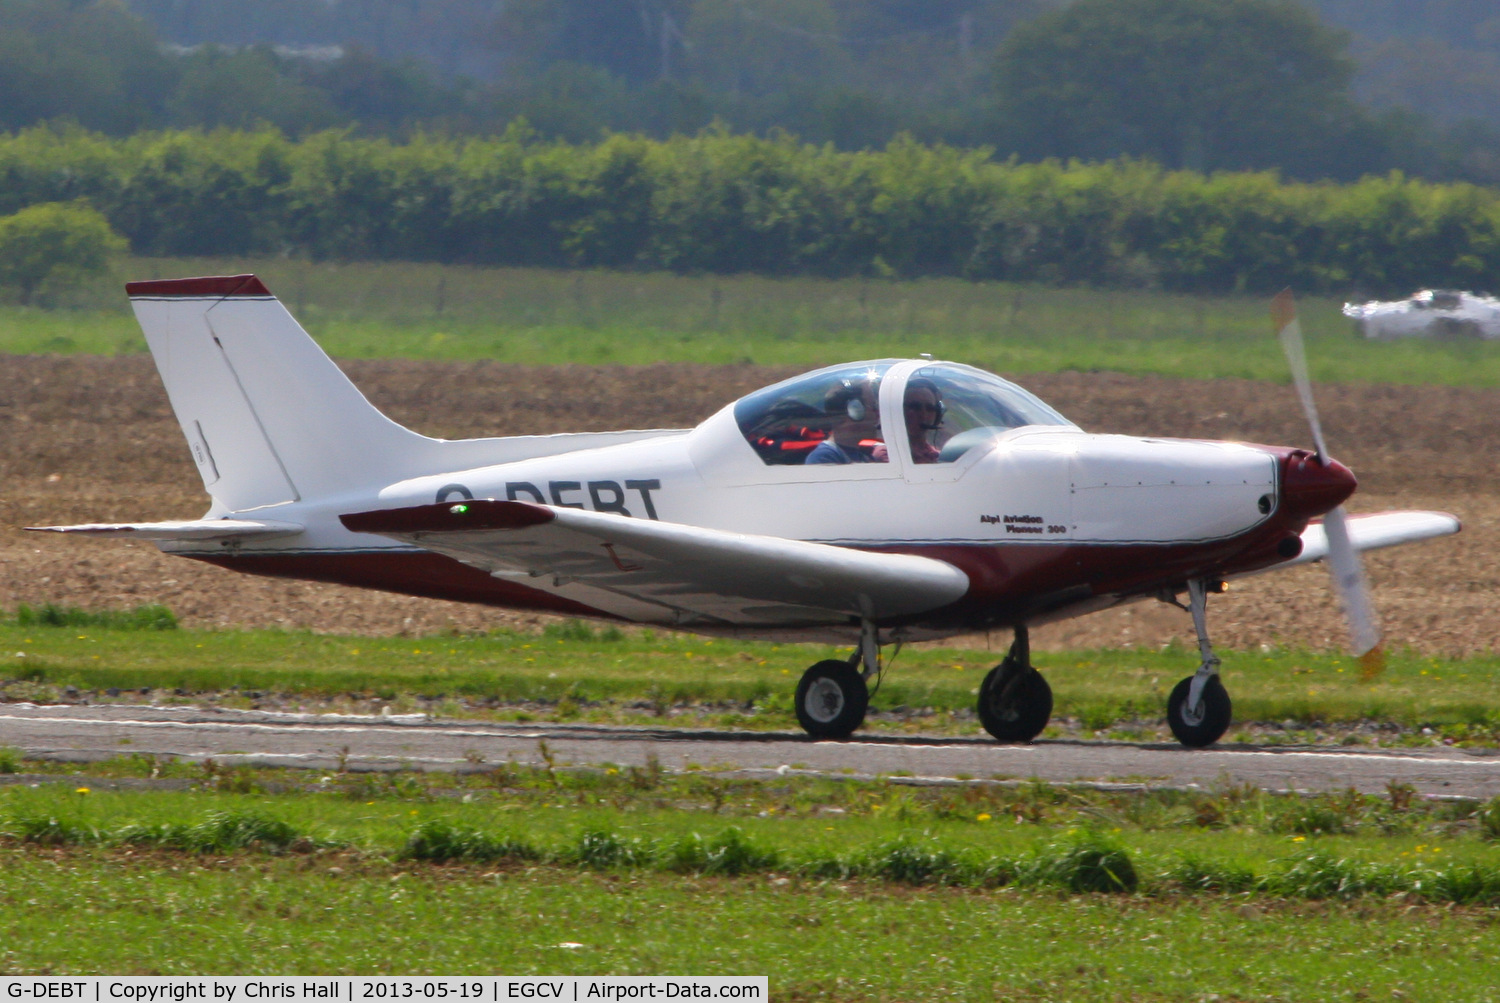 G-DEBT, 2006 Alpi Aviation Pioneer 300 C/N PFA 330-14291, at the Vintage Aircraft flyin